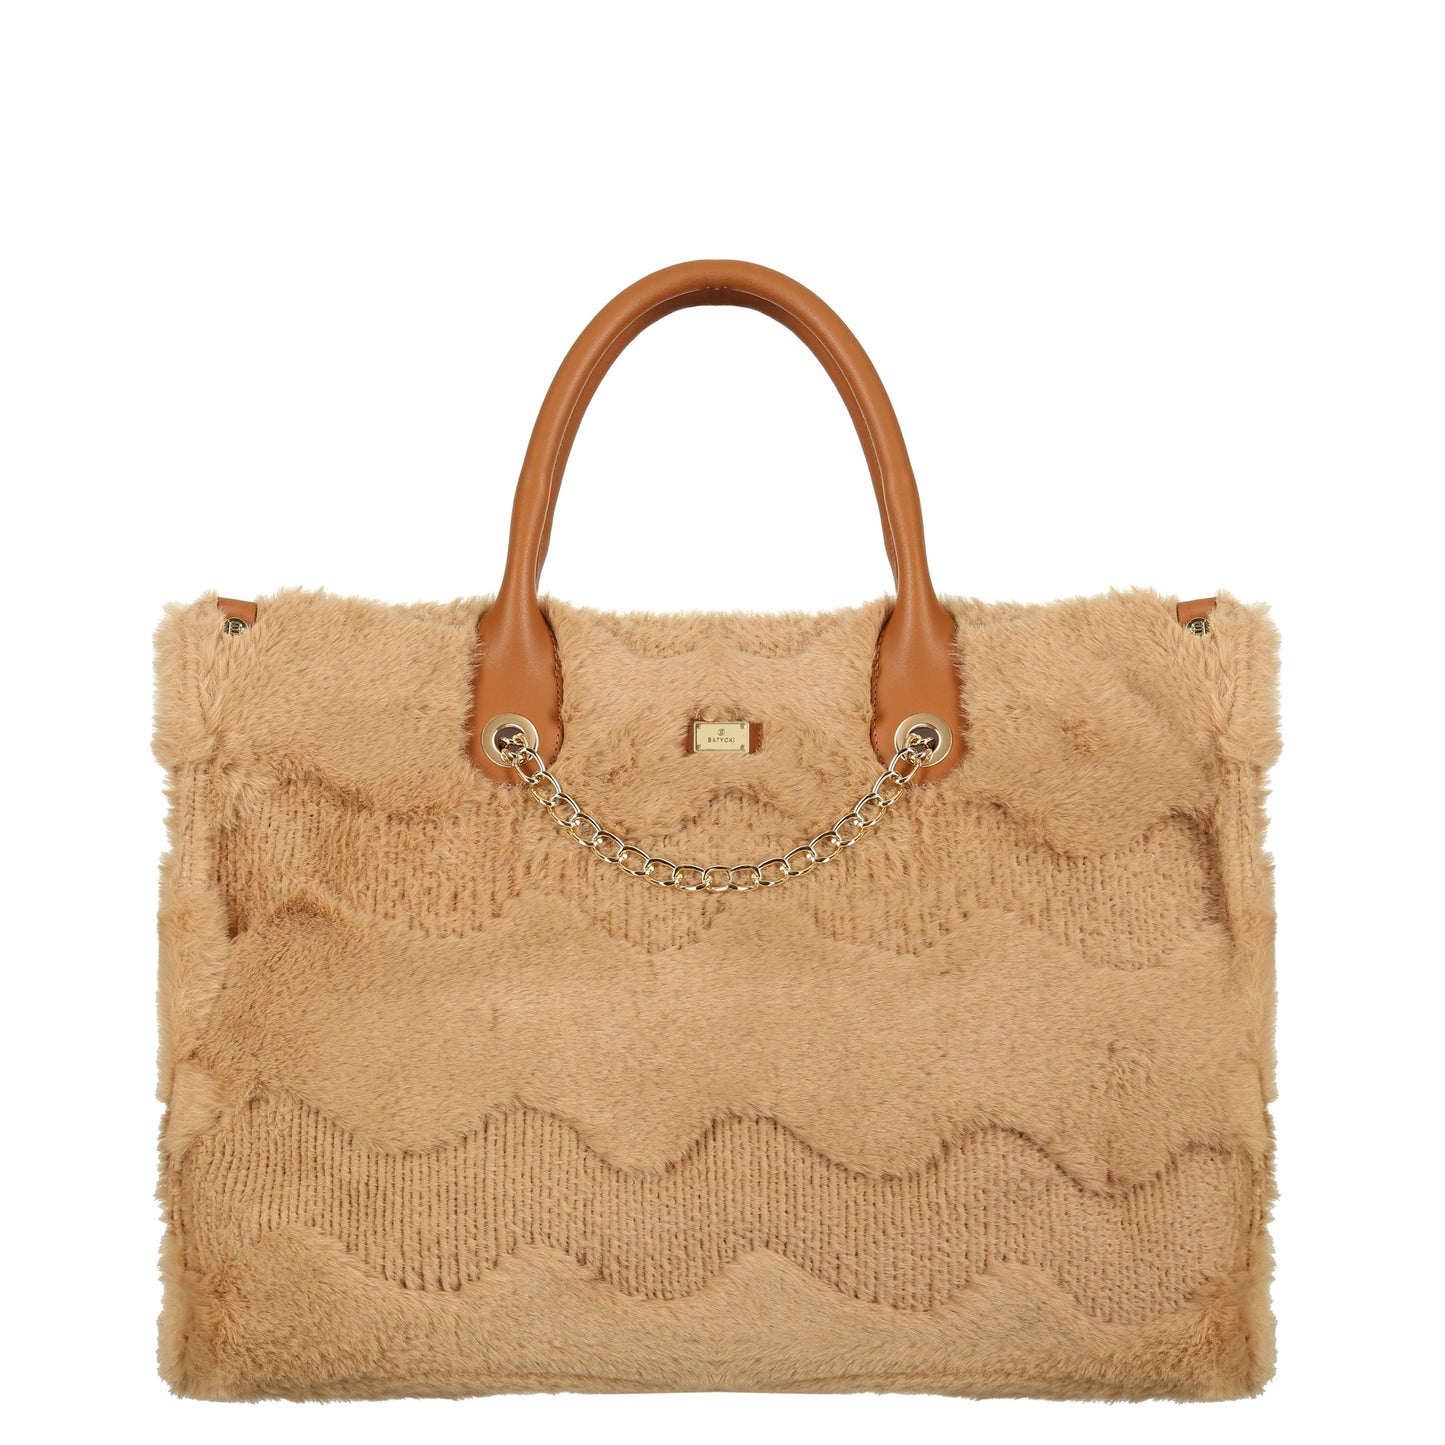 FUSSIE CAMEL women's handbag